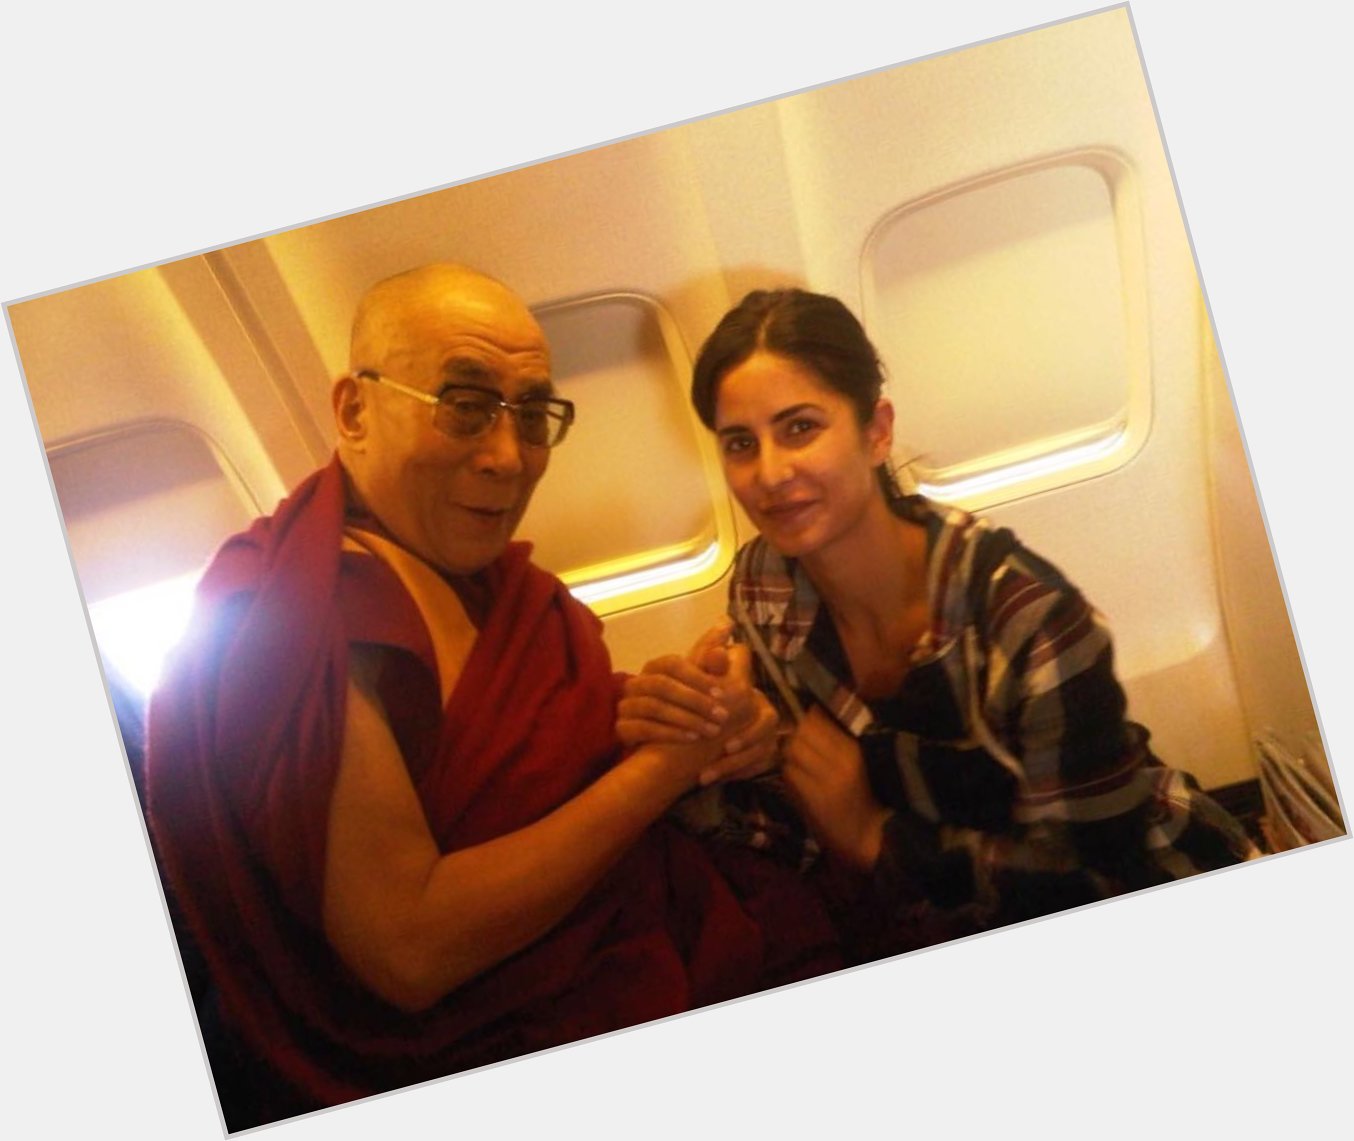 Katrina Kaif wishes the Dalai Lama happy birthday on Instagram: 